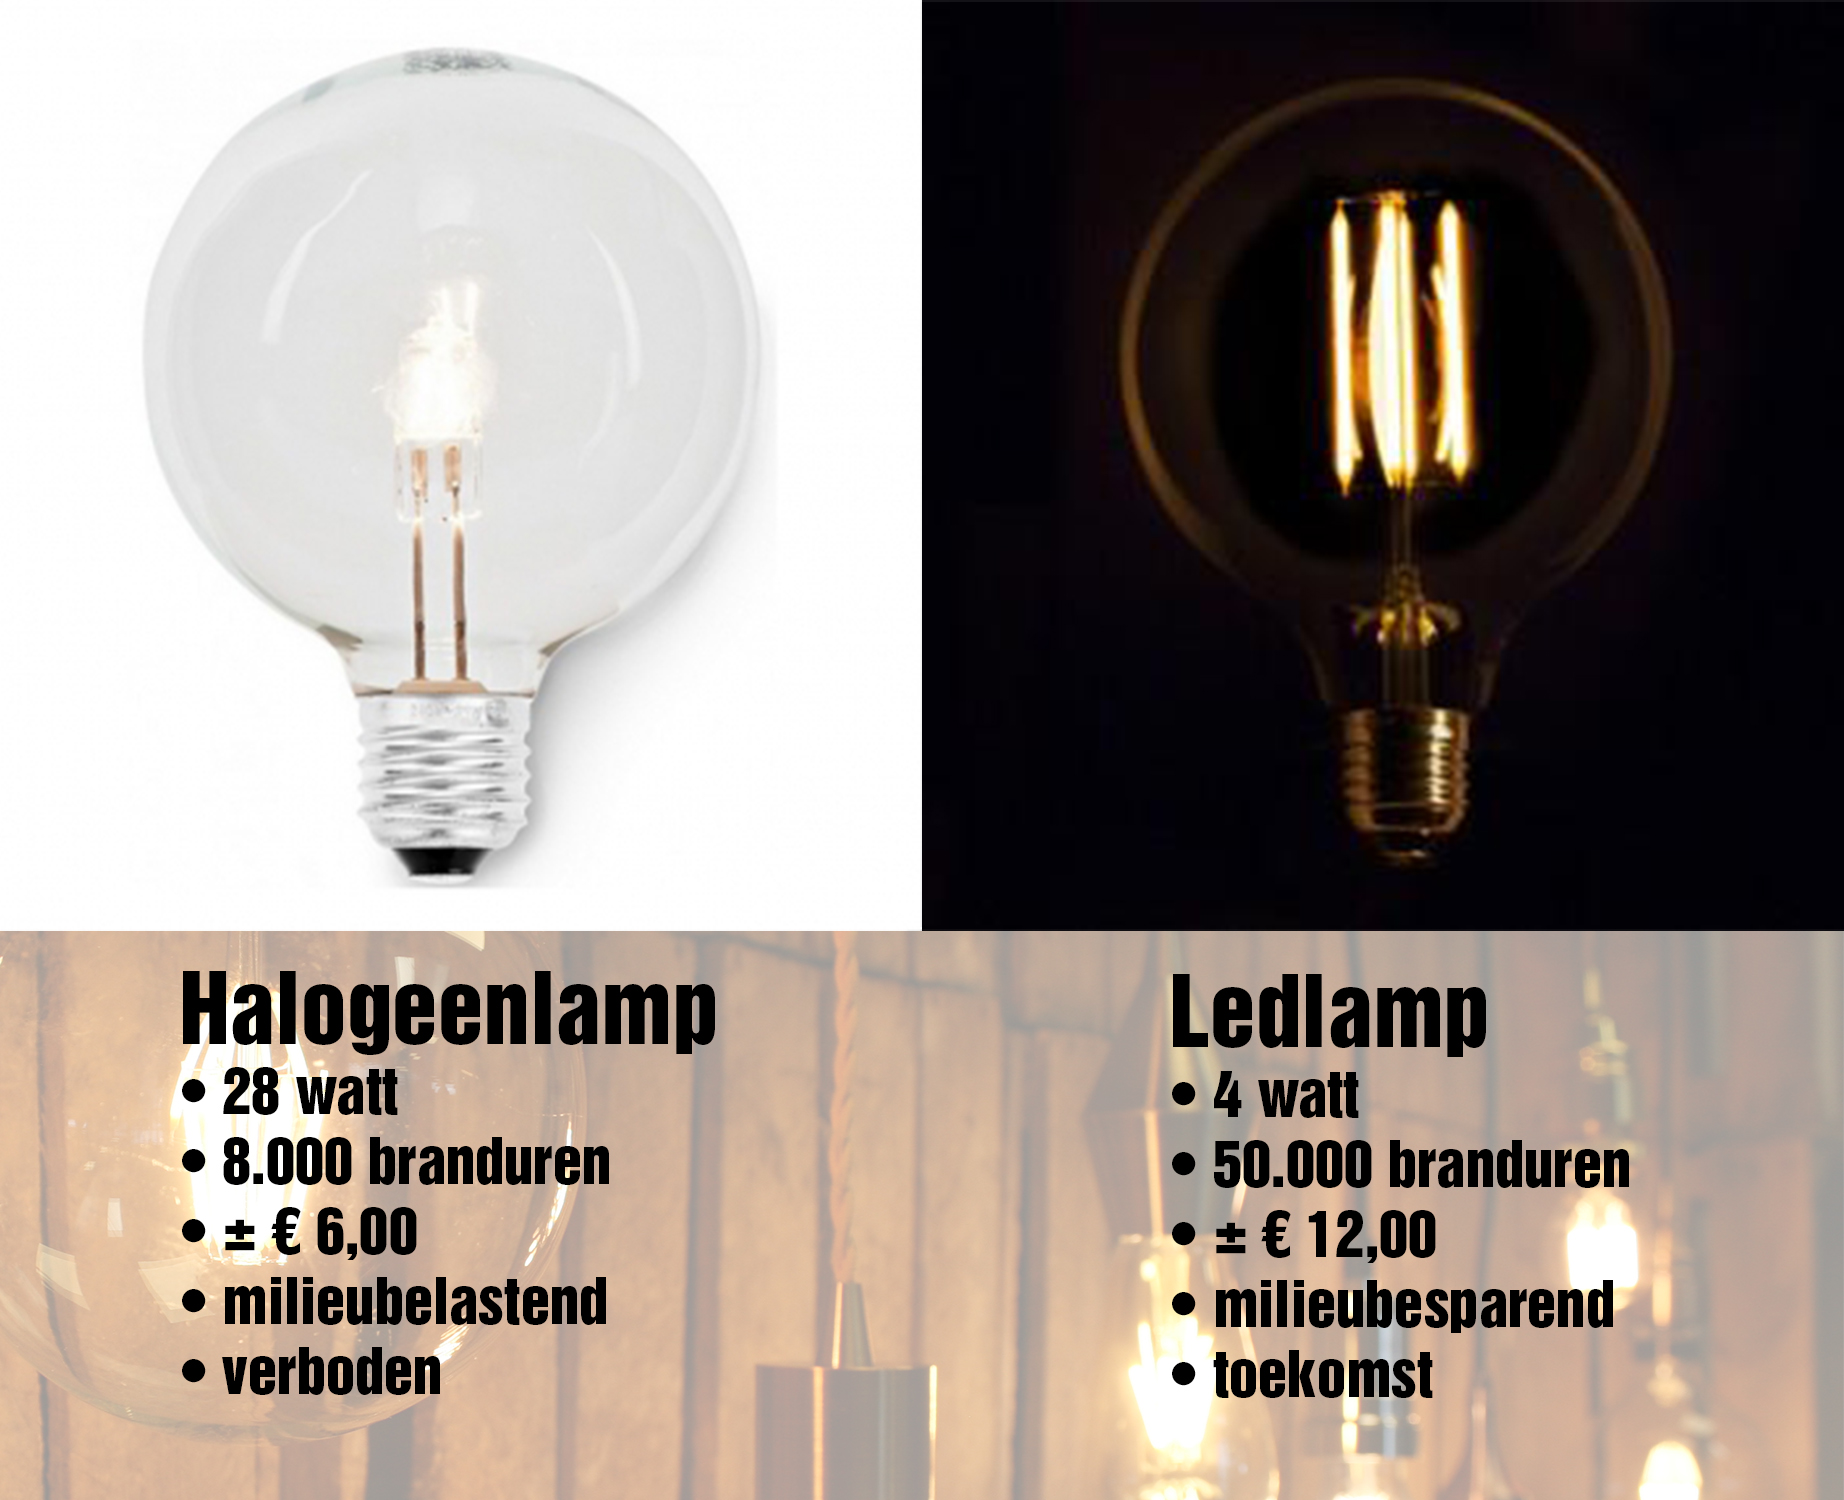 plakboek Eigen Luik Ledlamp vervanger van verboden halogeenlamp - SmiLED Lighting